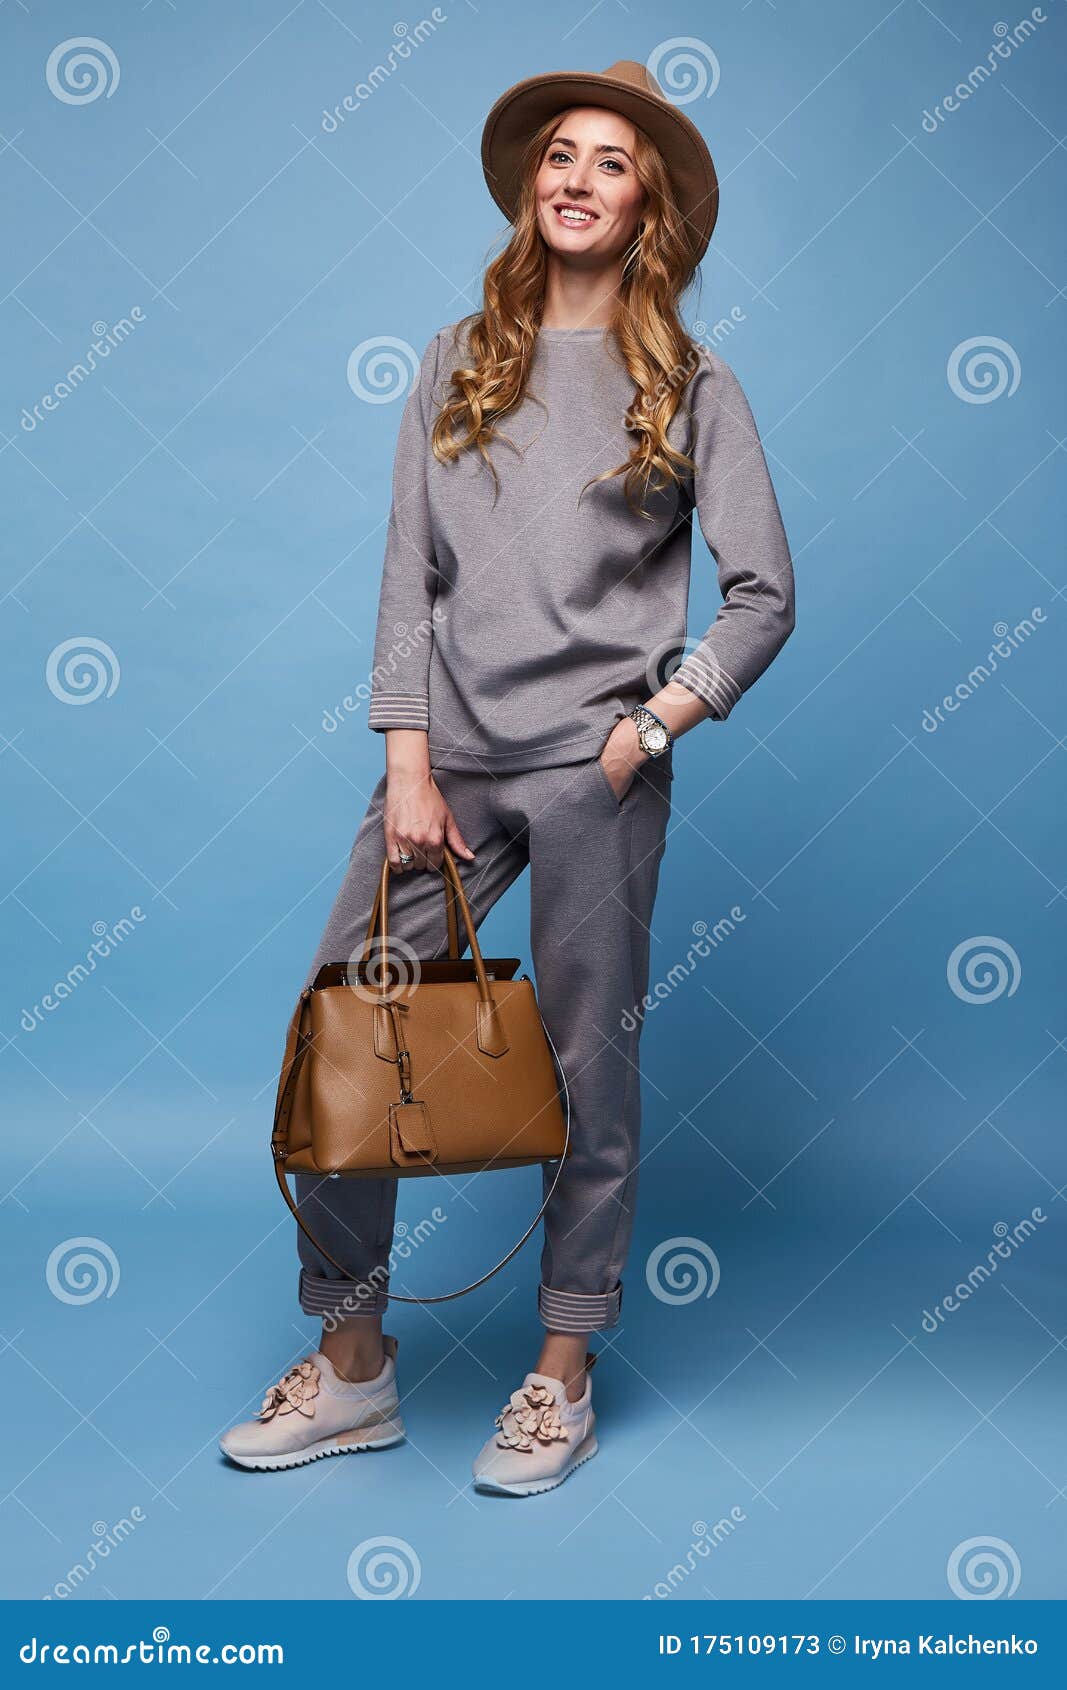 verkrachting Blozend Hangen Mooie Vrouw Sexy Glamour Mode Draagt Kleding Voor Casual Suit Shirt En  Broek Trendy Accessoire Bag Stock Afbeelding - Image of aantrekkelijk,  inzameling: 175109173